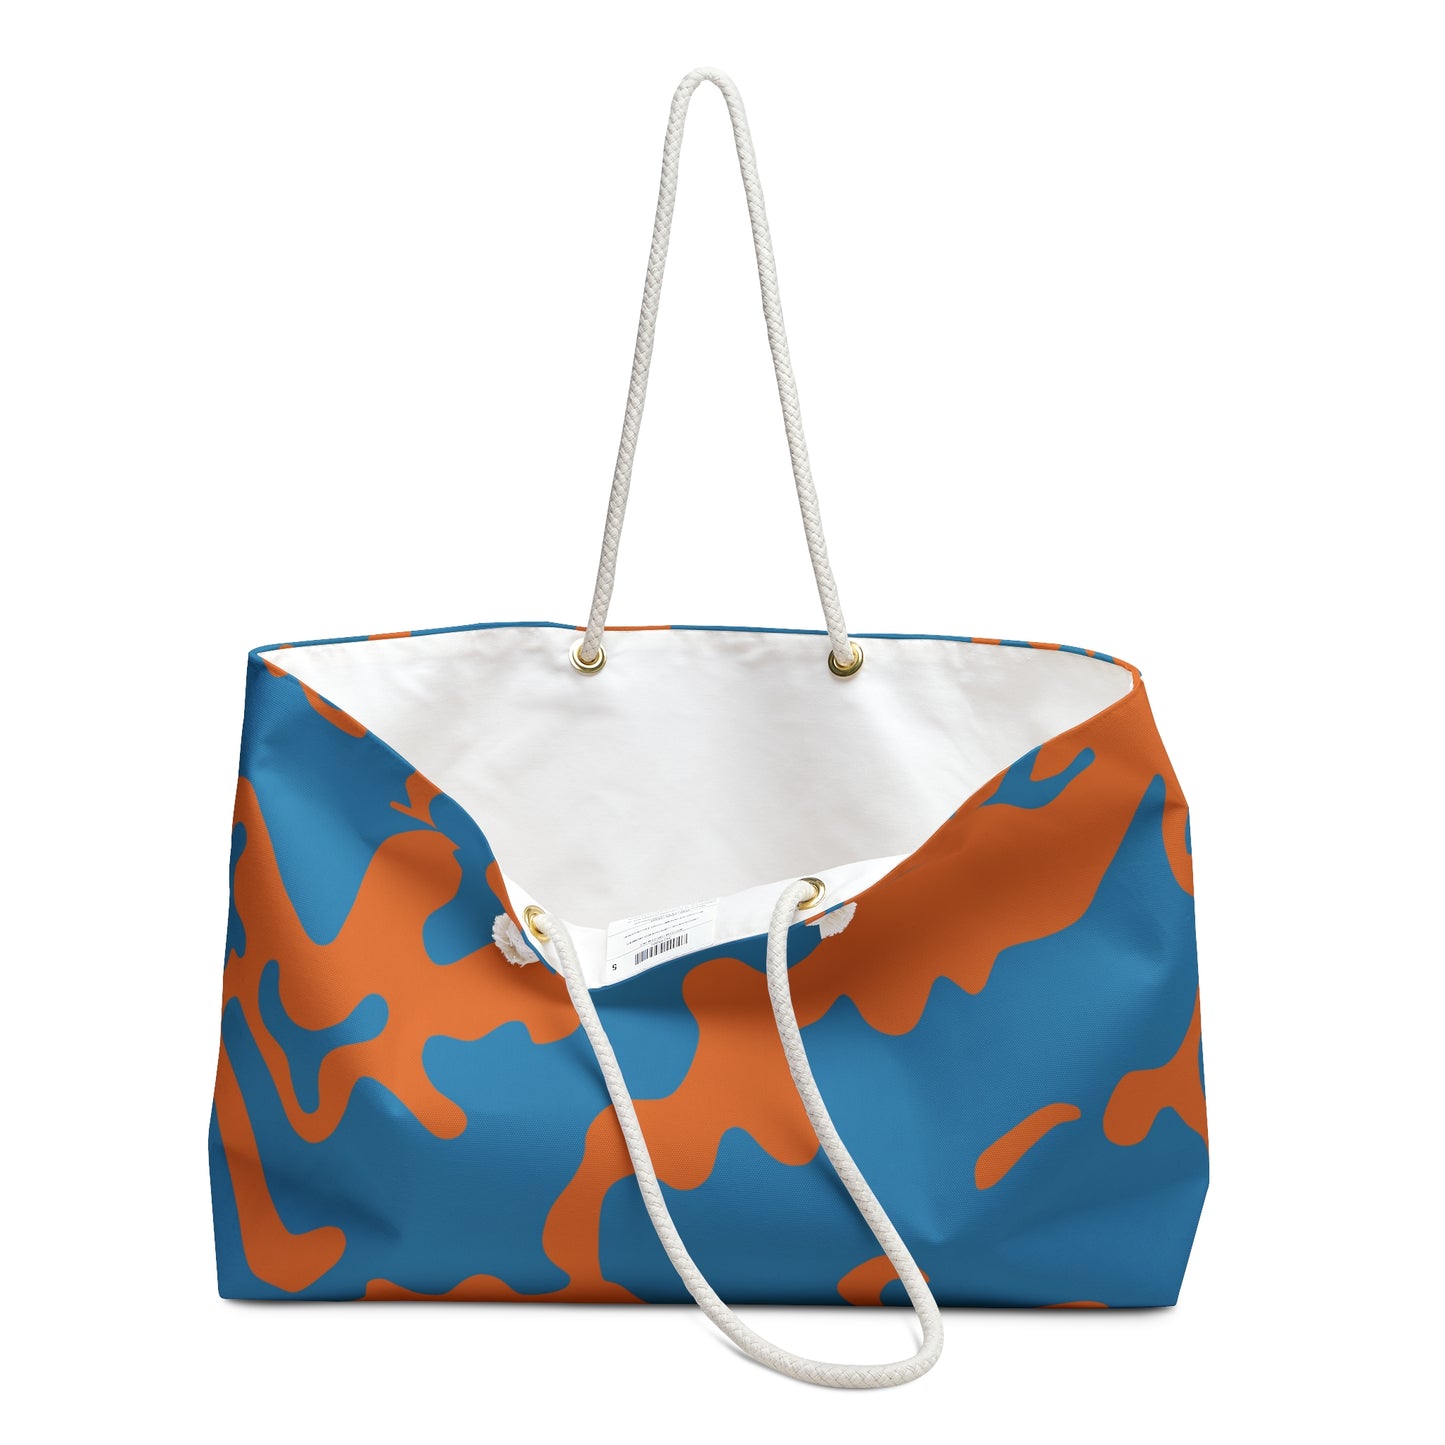 Weekender Beach Bag | All Over Print Bag | Camouflage Blue & Orange Design